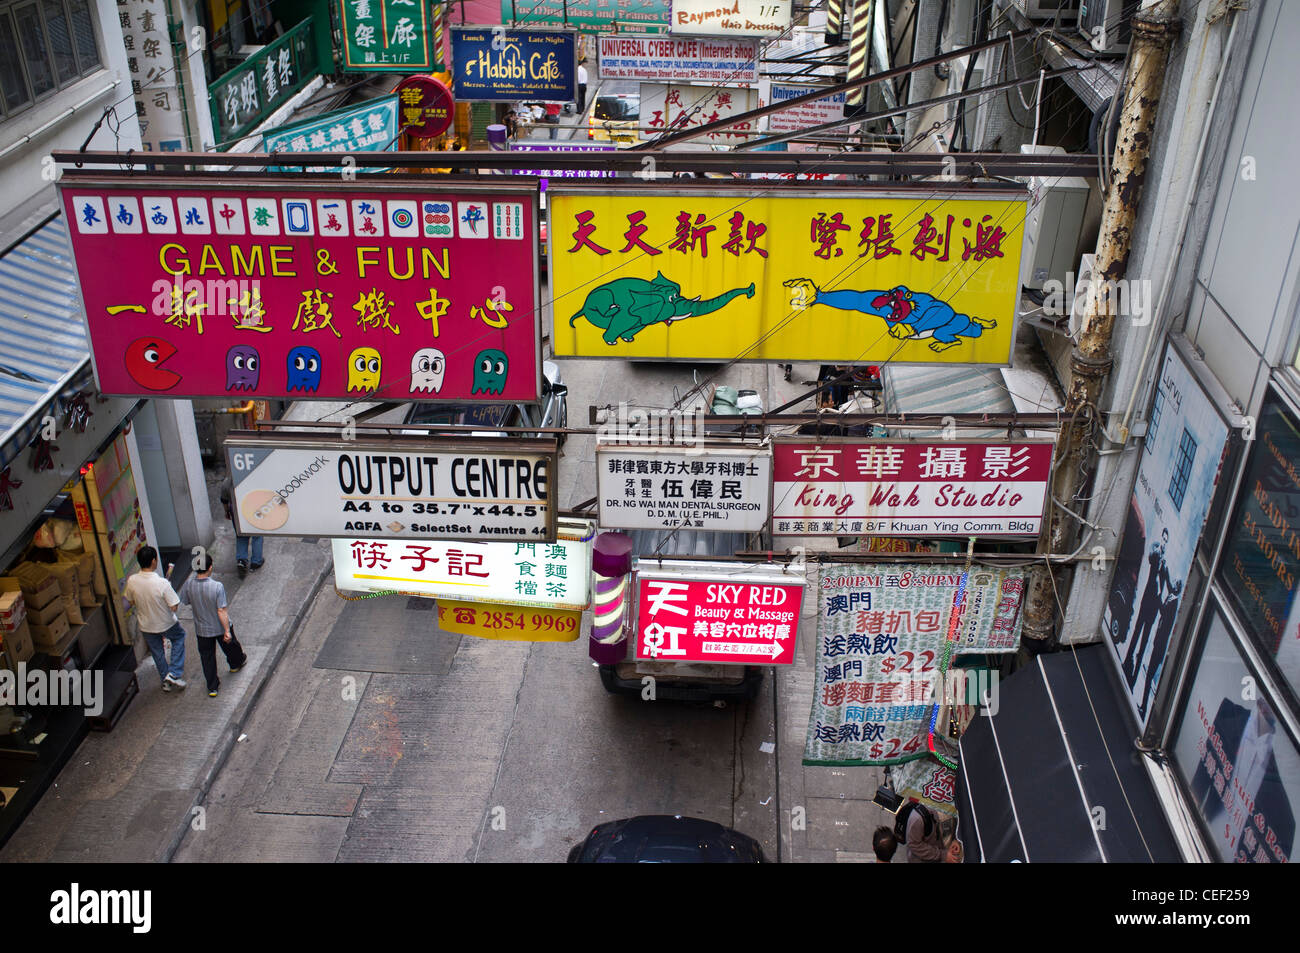 dh Midlevels CENTRE DE LA RUE DE HONG KONG scène chinois panneaux publicitaires calligraphie et publicité anglaise poster publicitaire asie panneau publicitaire écriture Banque D'Images